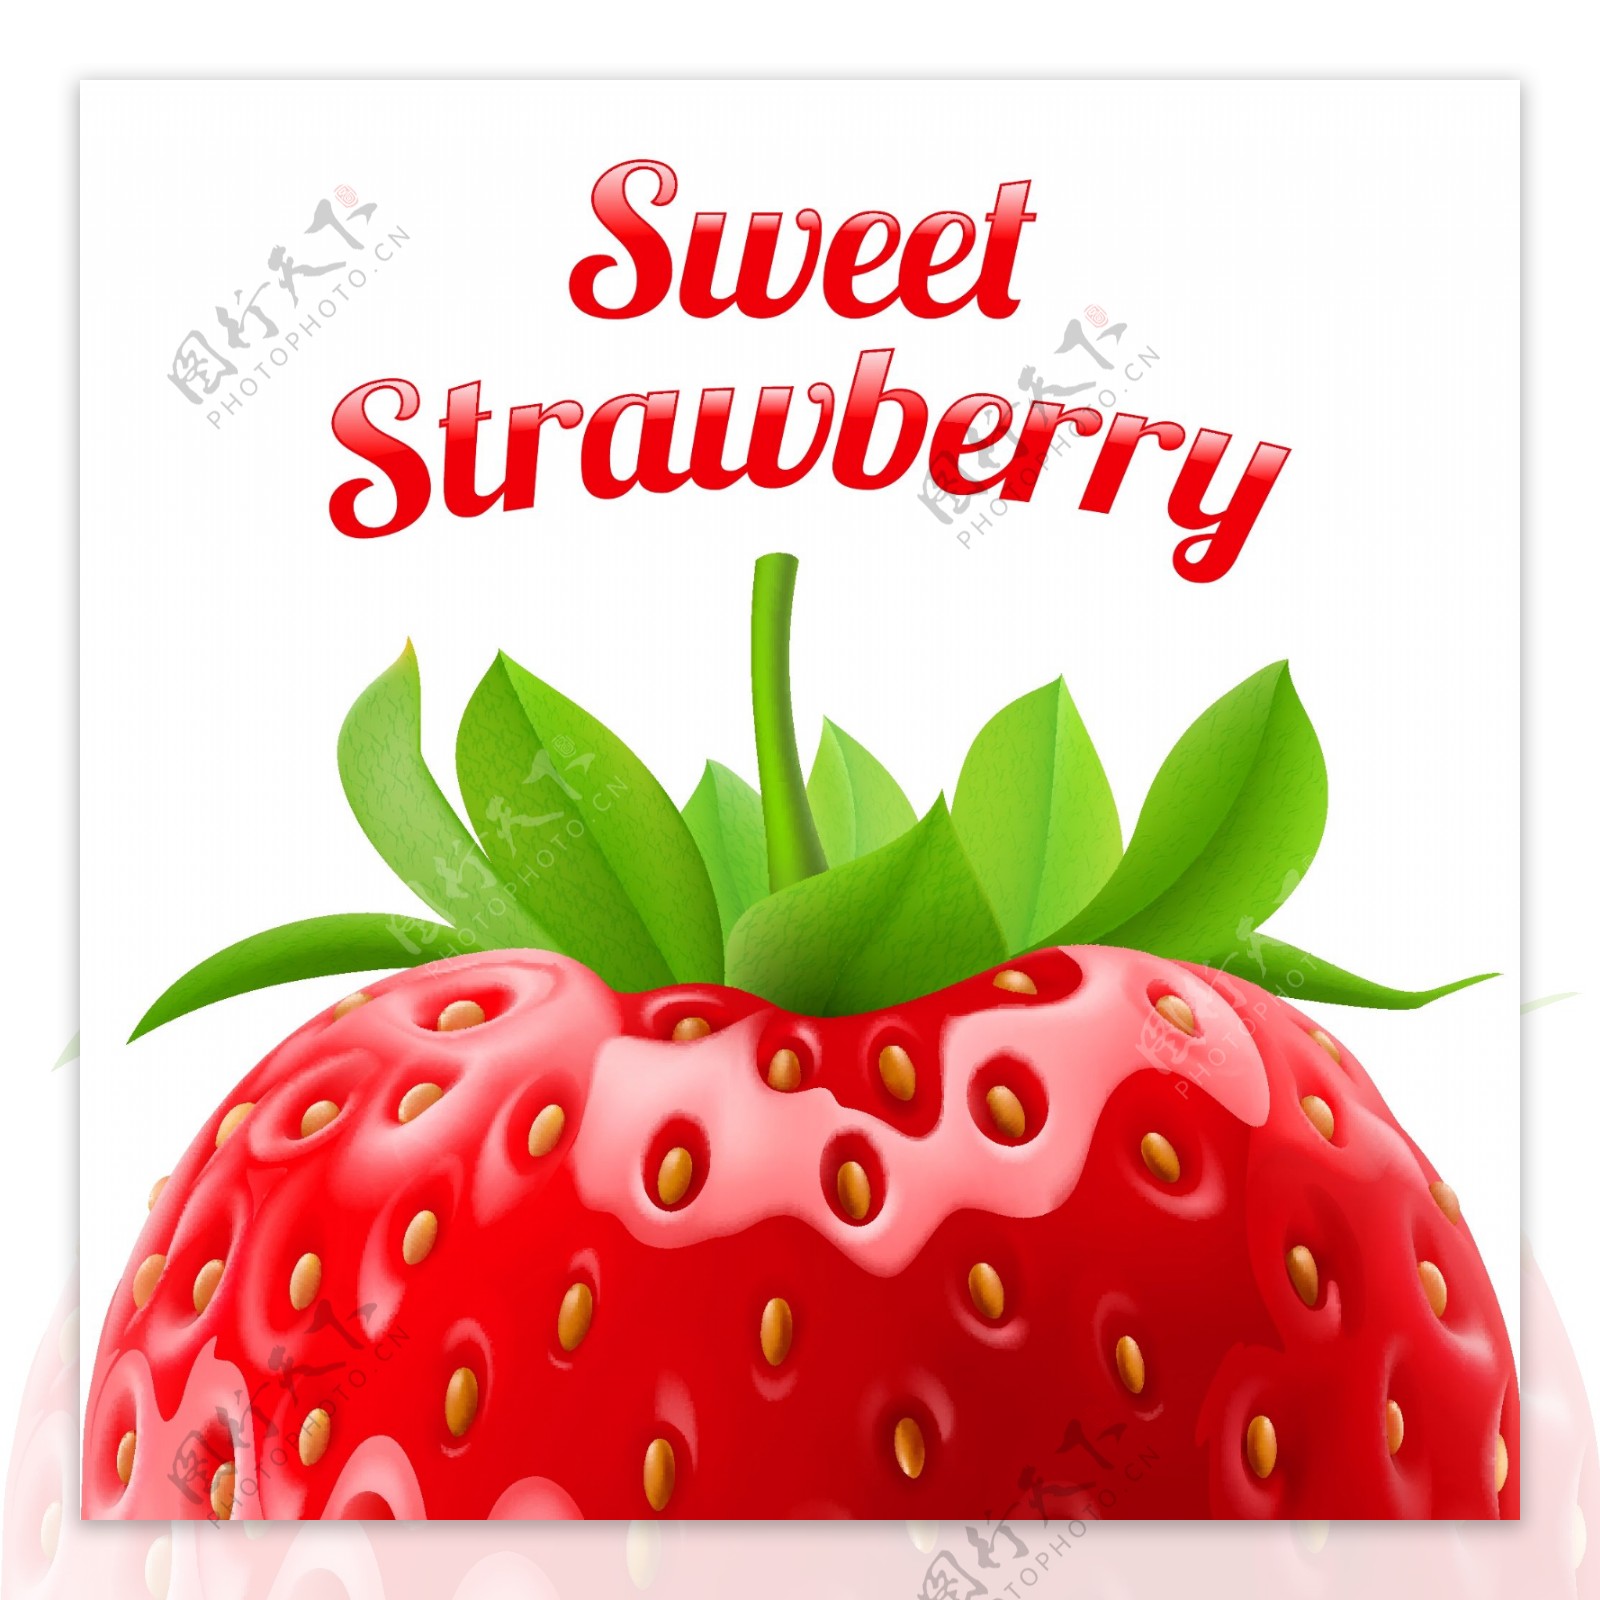 美味新鲜草莓矢量图